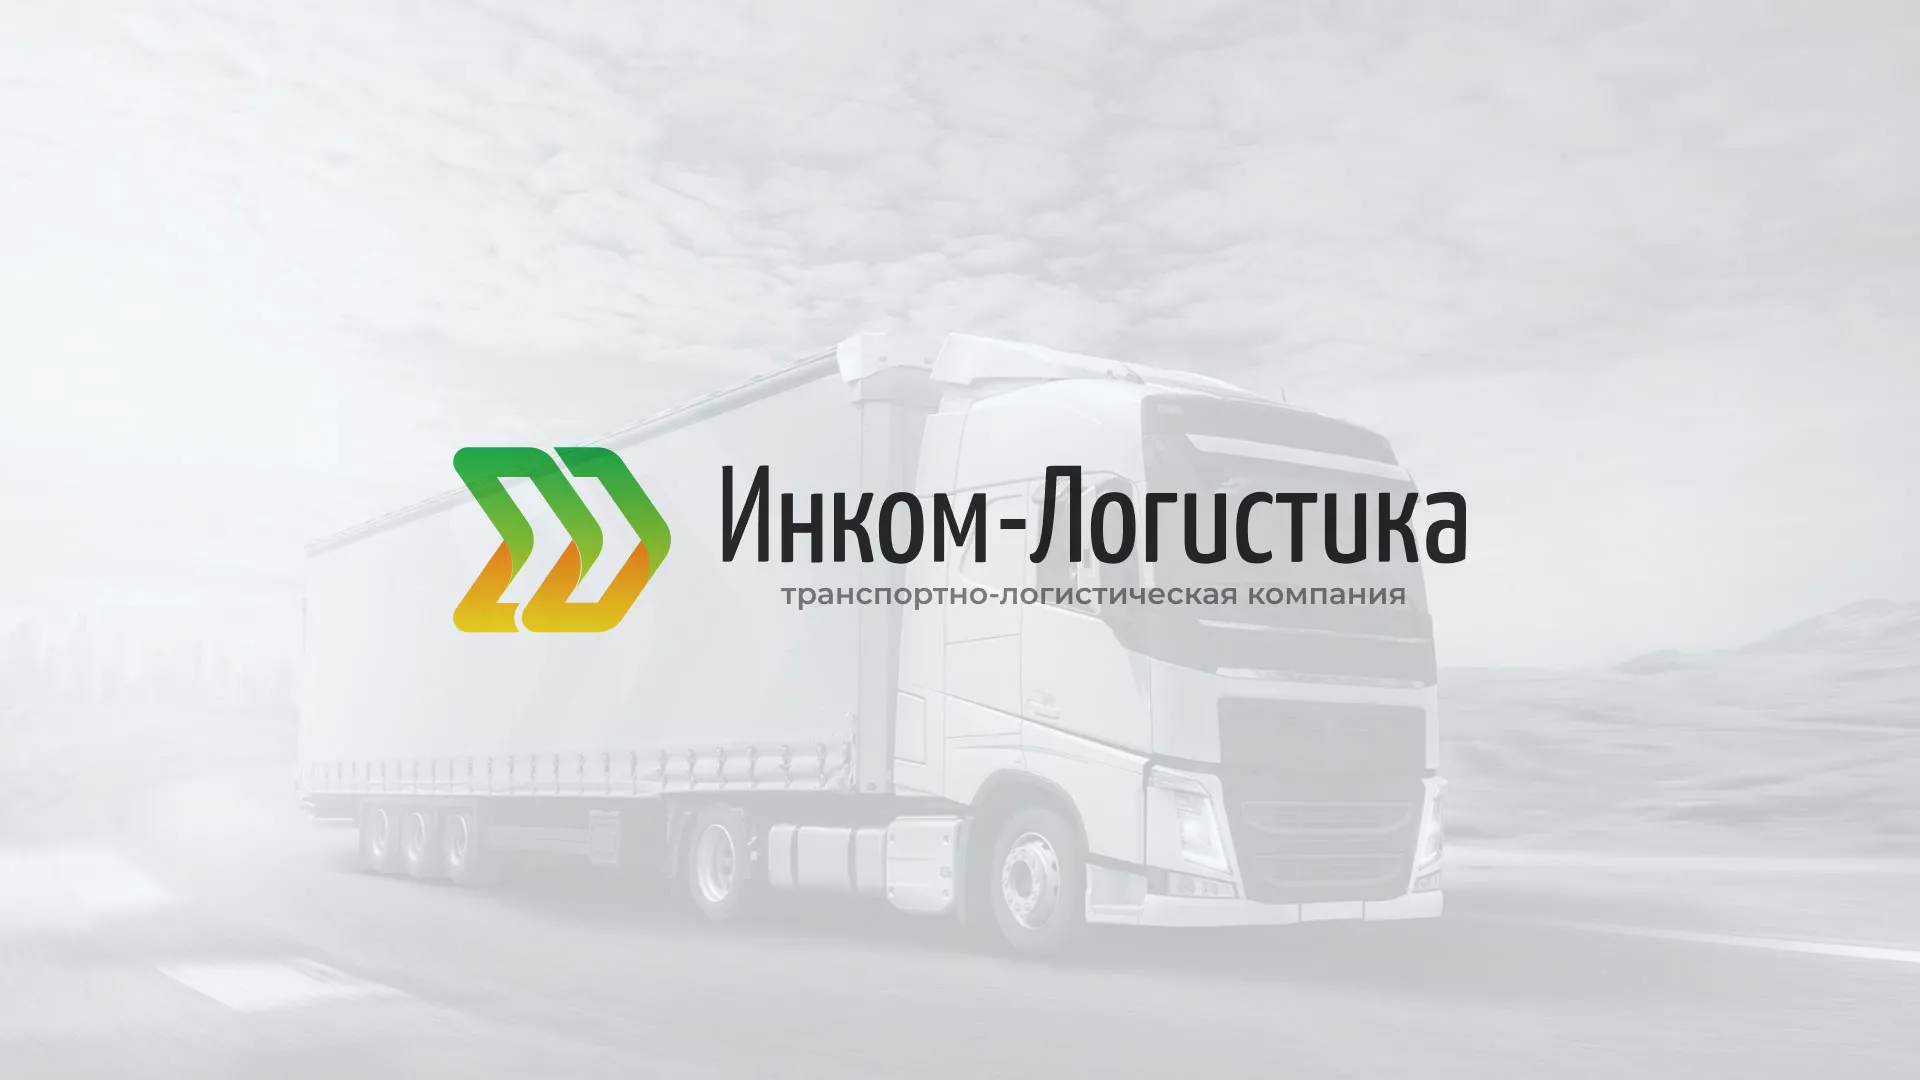 Разработка логотипа и сайта компании «Инком-Логистика» в Санкт-Петербурге